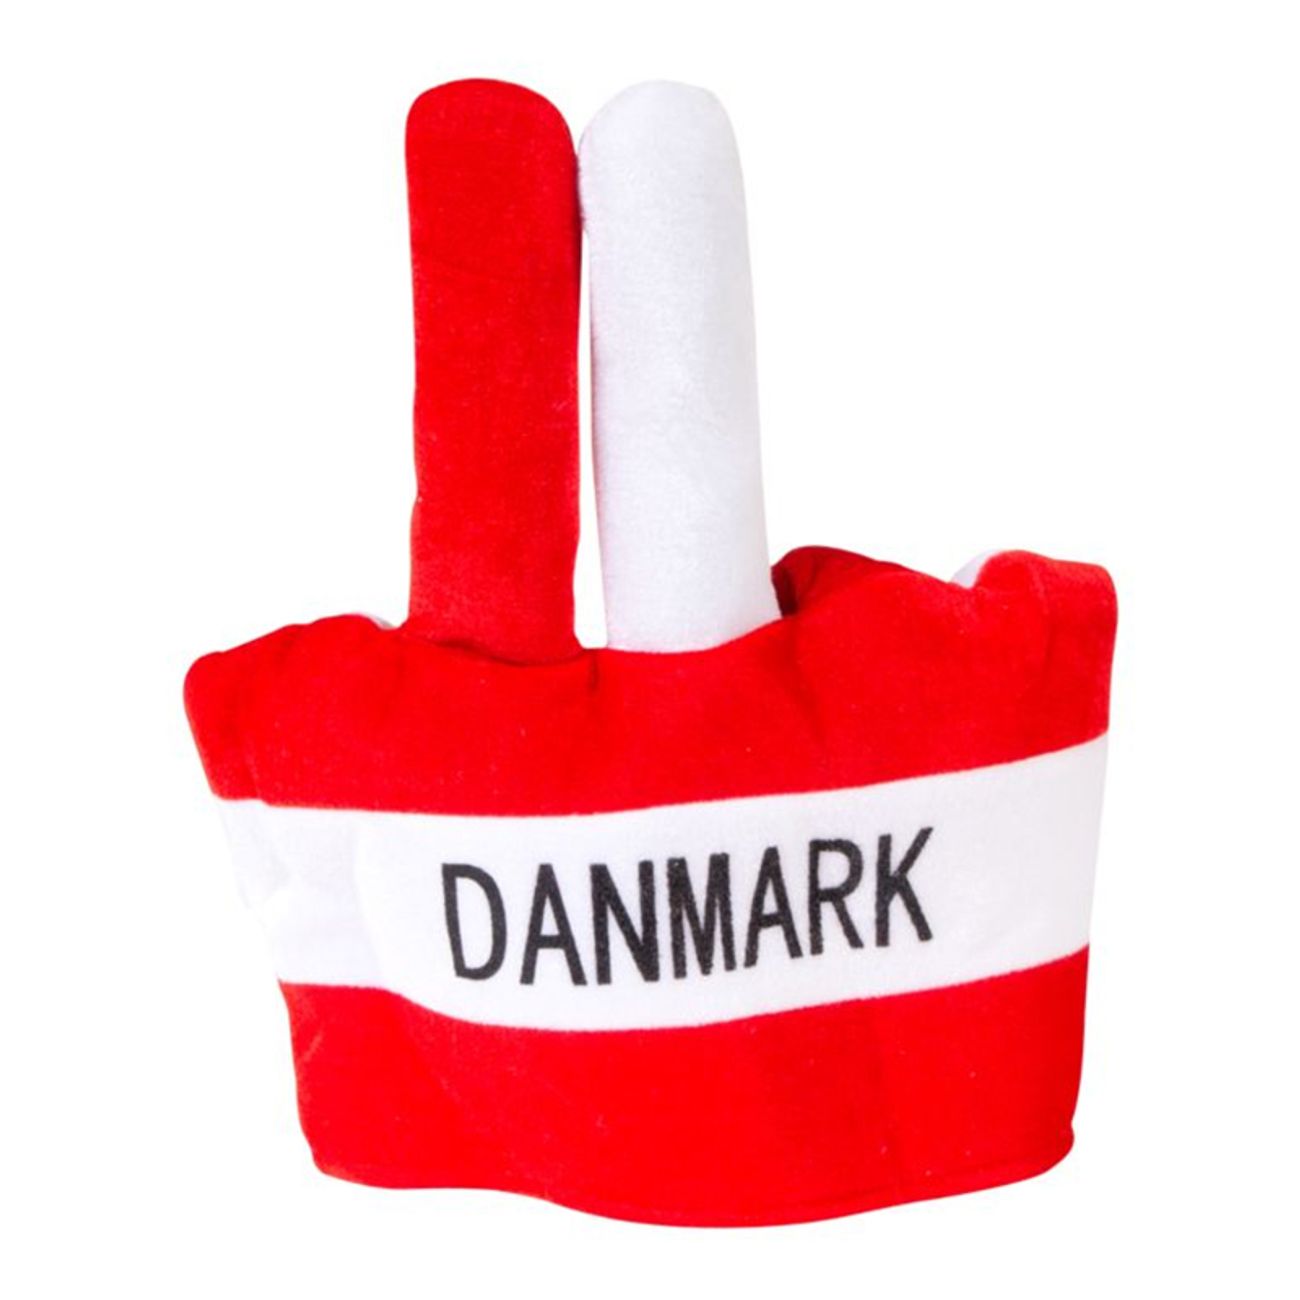 supporterhatt-danmark-med-fingrar-79989-1